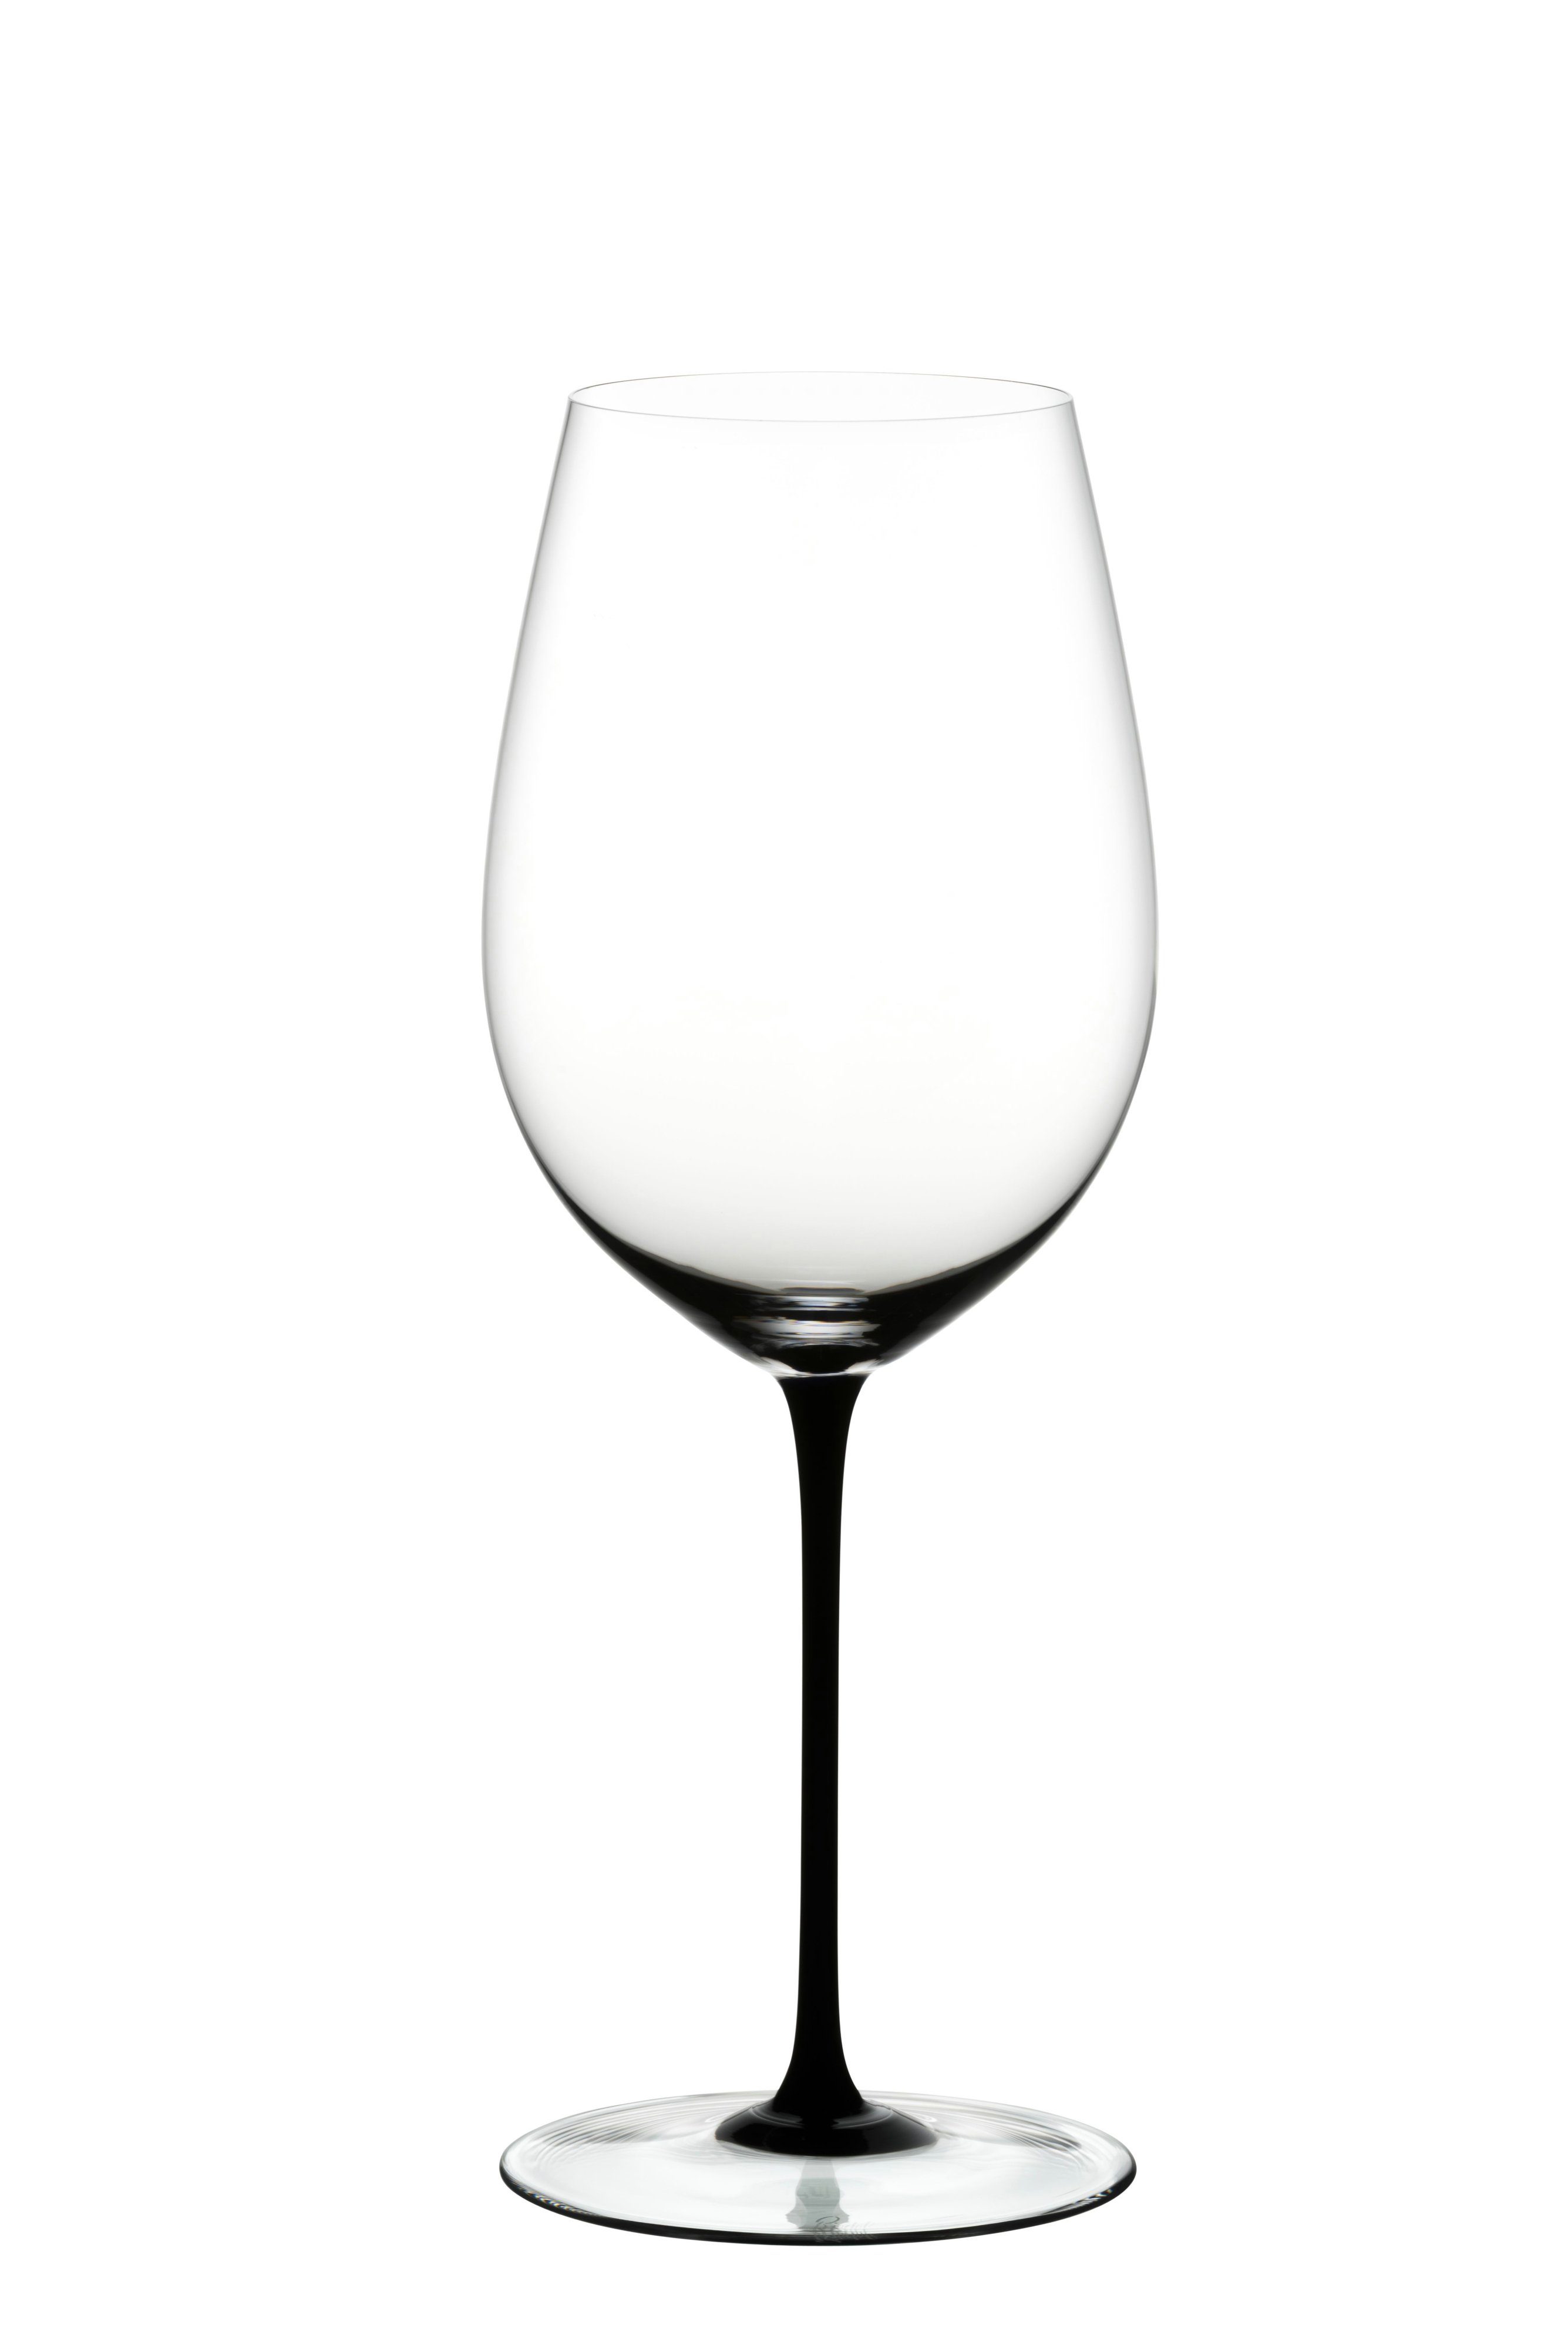 RIEDEL Glas Rotweinglas Riedel Sommeliers Black Tie Bordeaux Grand Cru, Glas